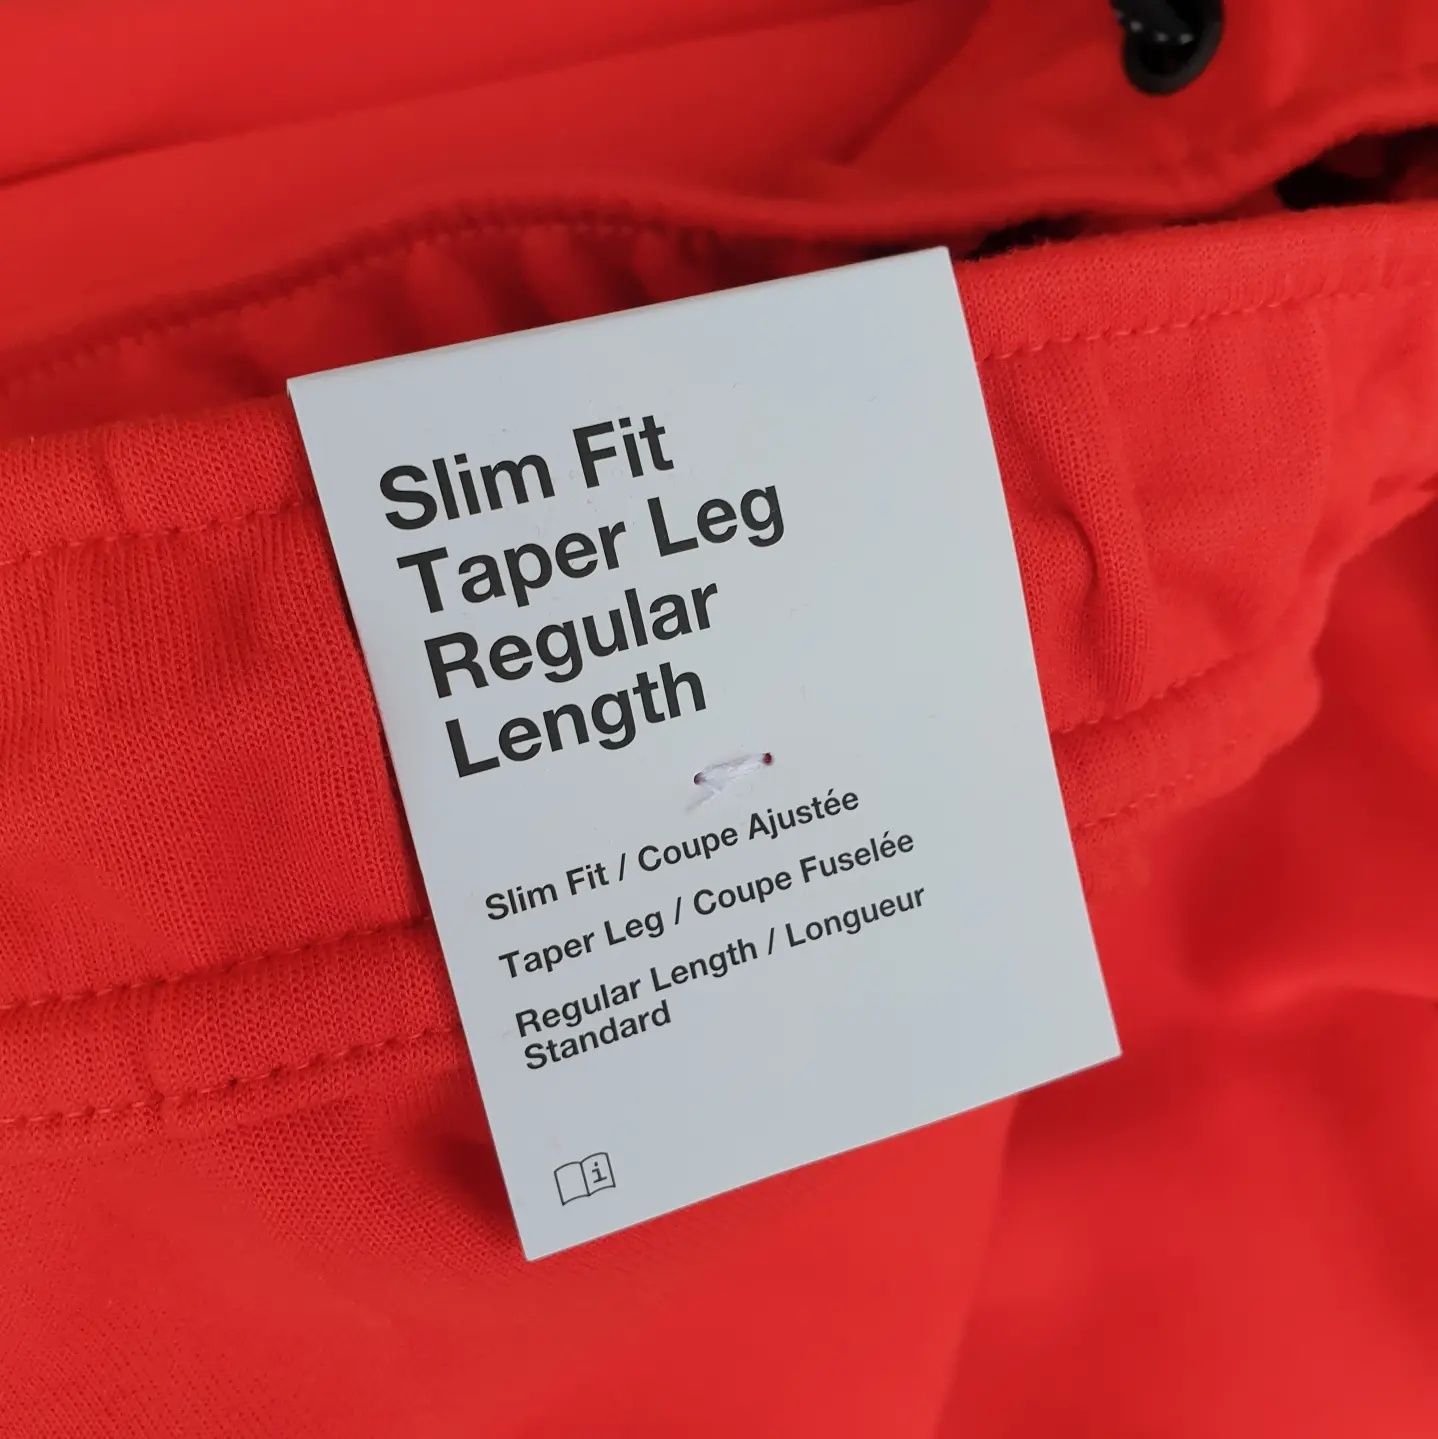 Pantaloni Nike Tech Fleece Red